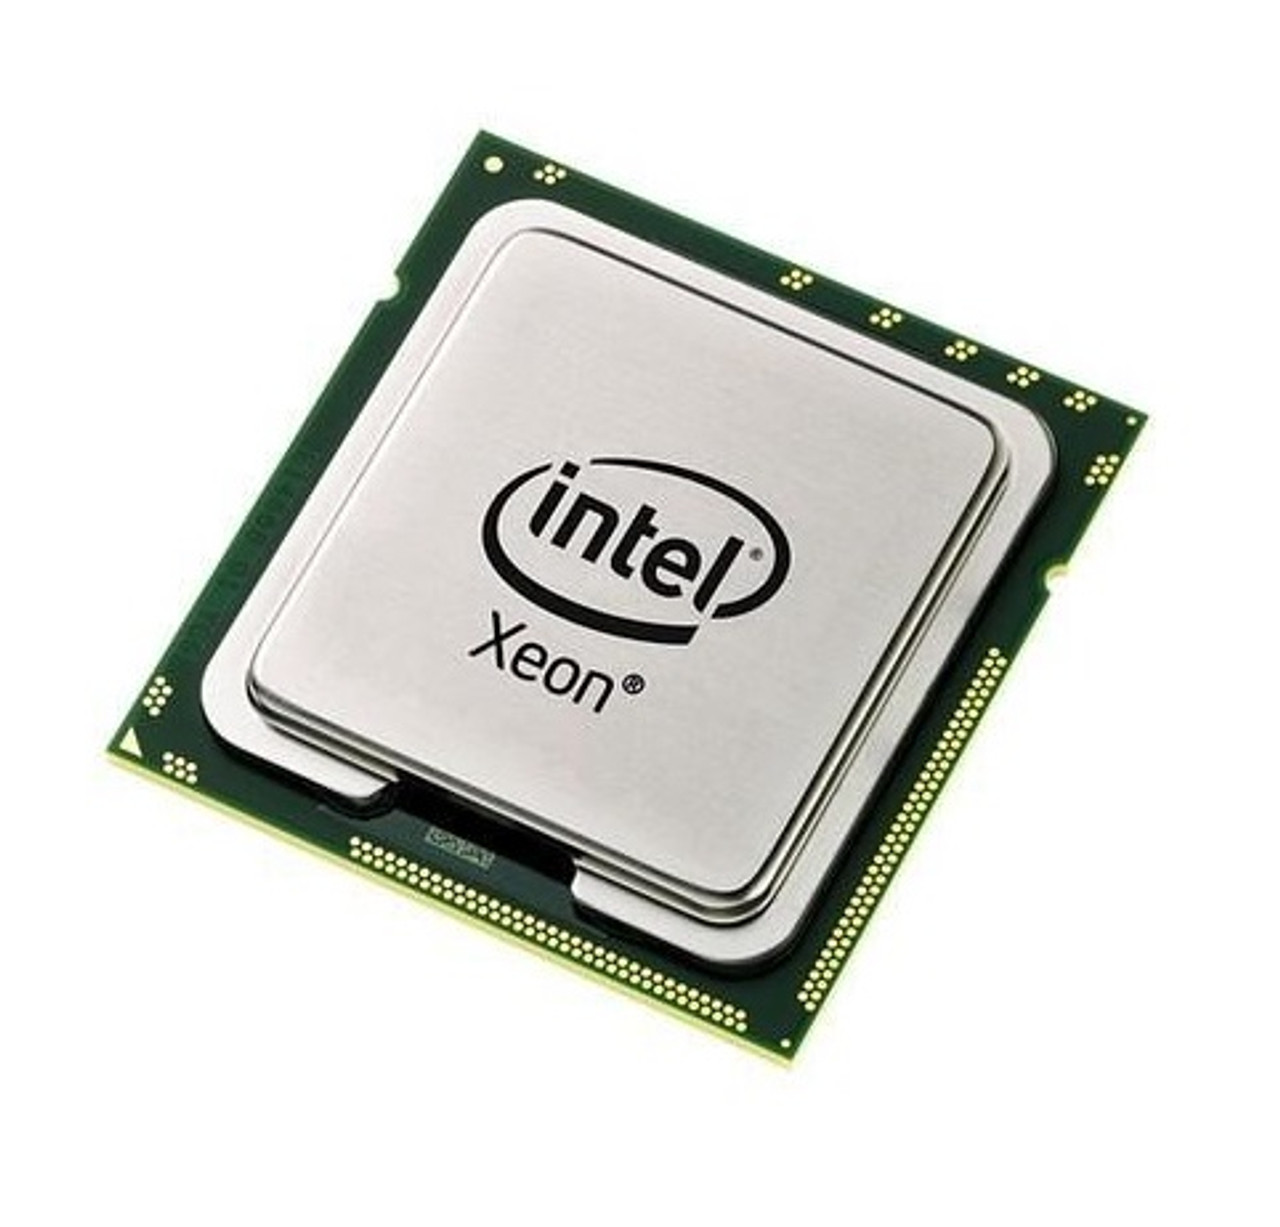 80565JH0368M - Intel Xeon L7345 Quad Core 1.86GHz 1066MHz FSB 8MB L2 Cache Socket PPGA604 Processor